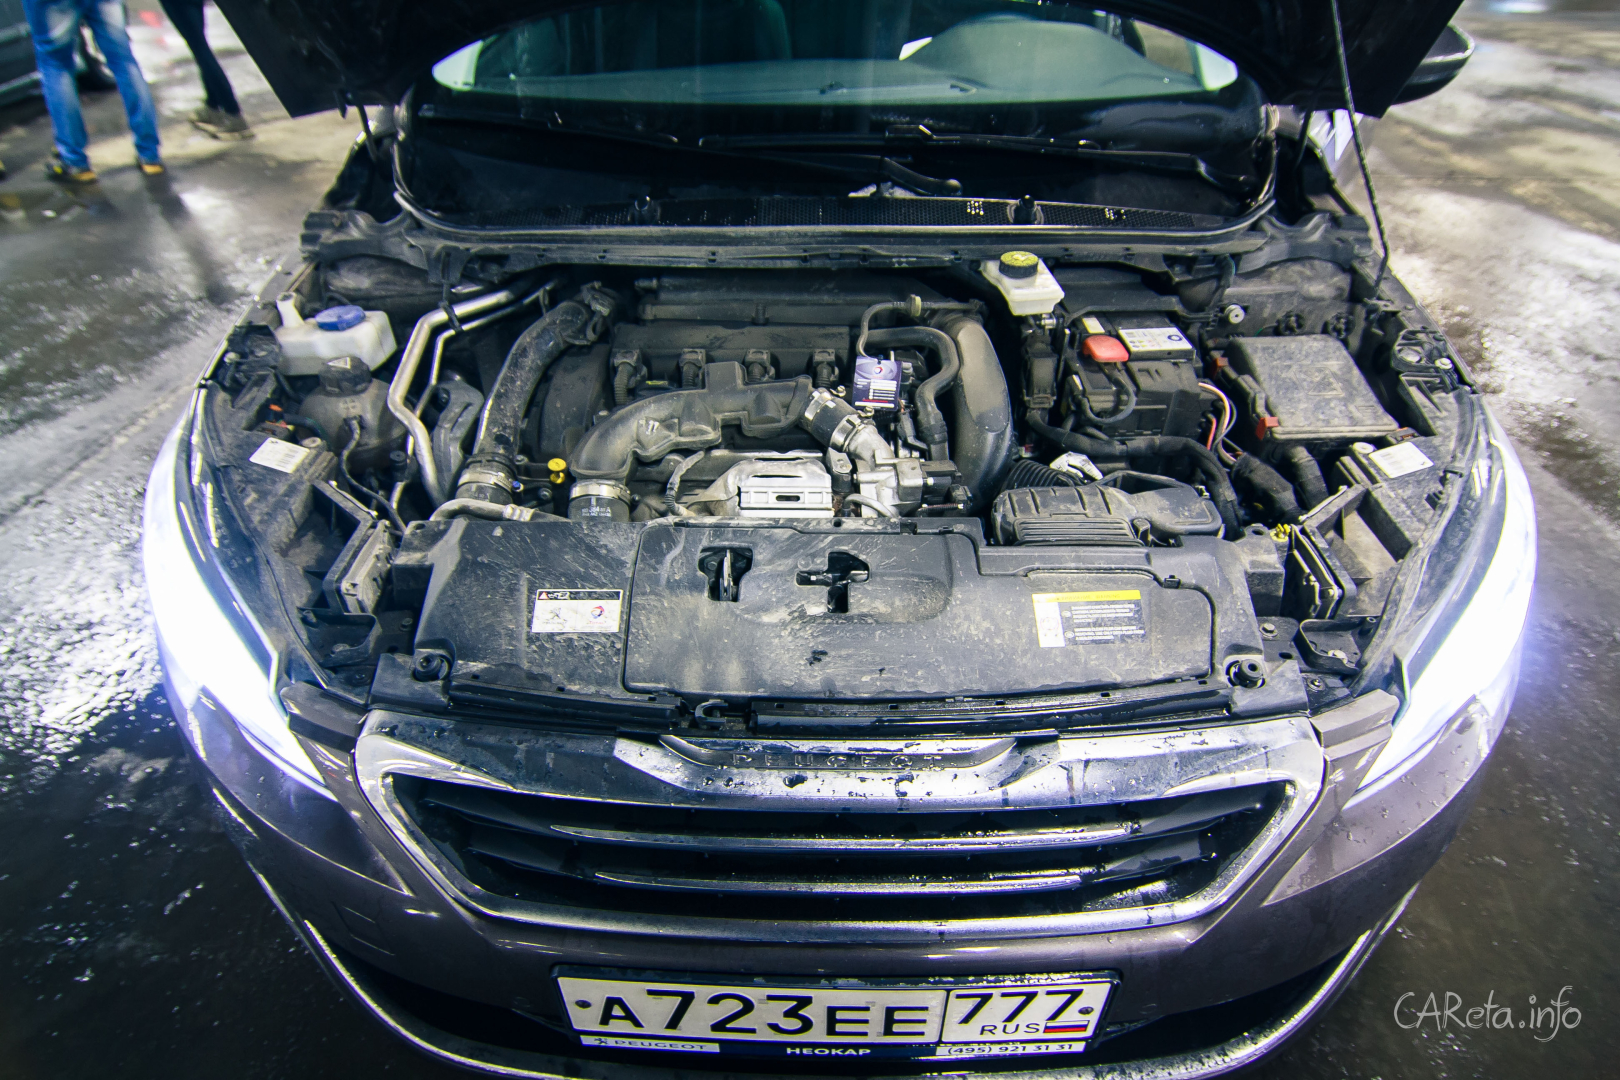 Француз покоряет русские сердца: Тест-драйв Peugeot 308